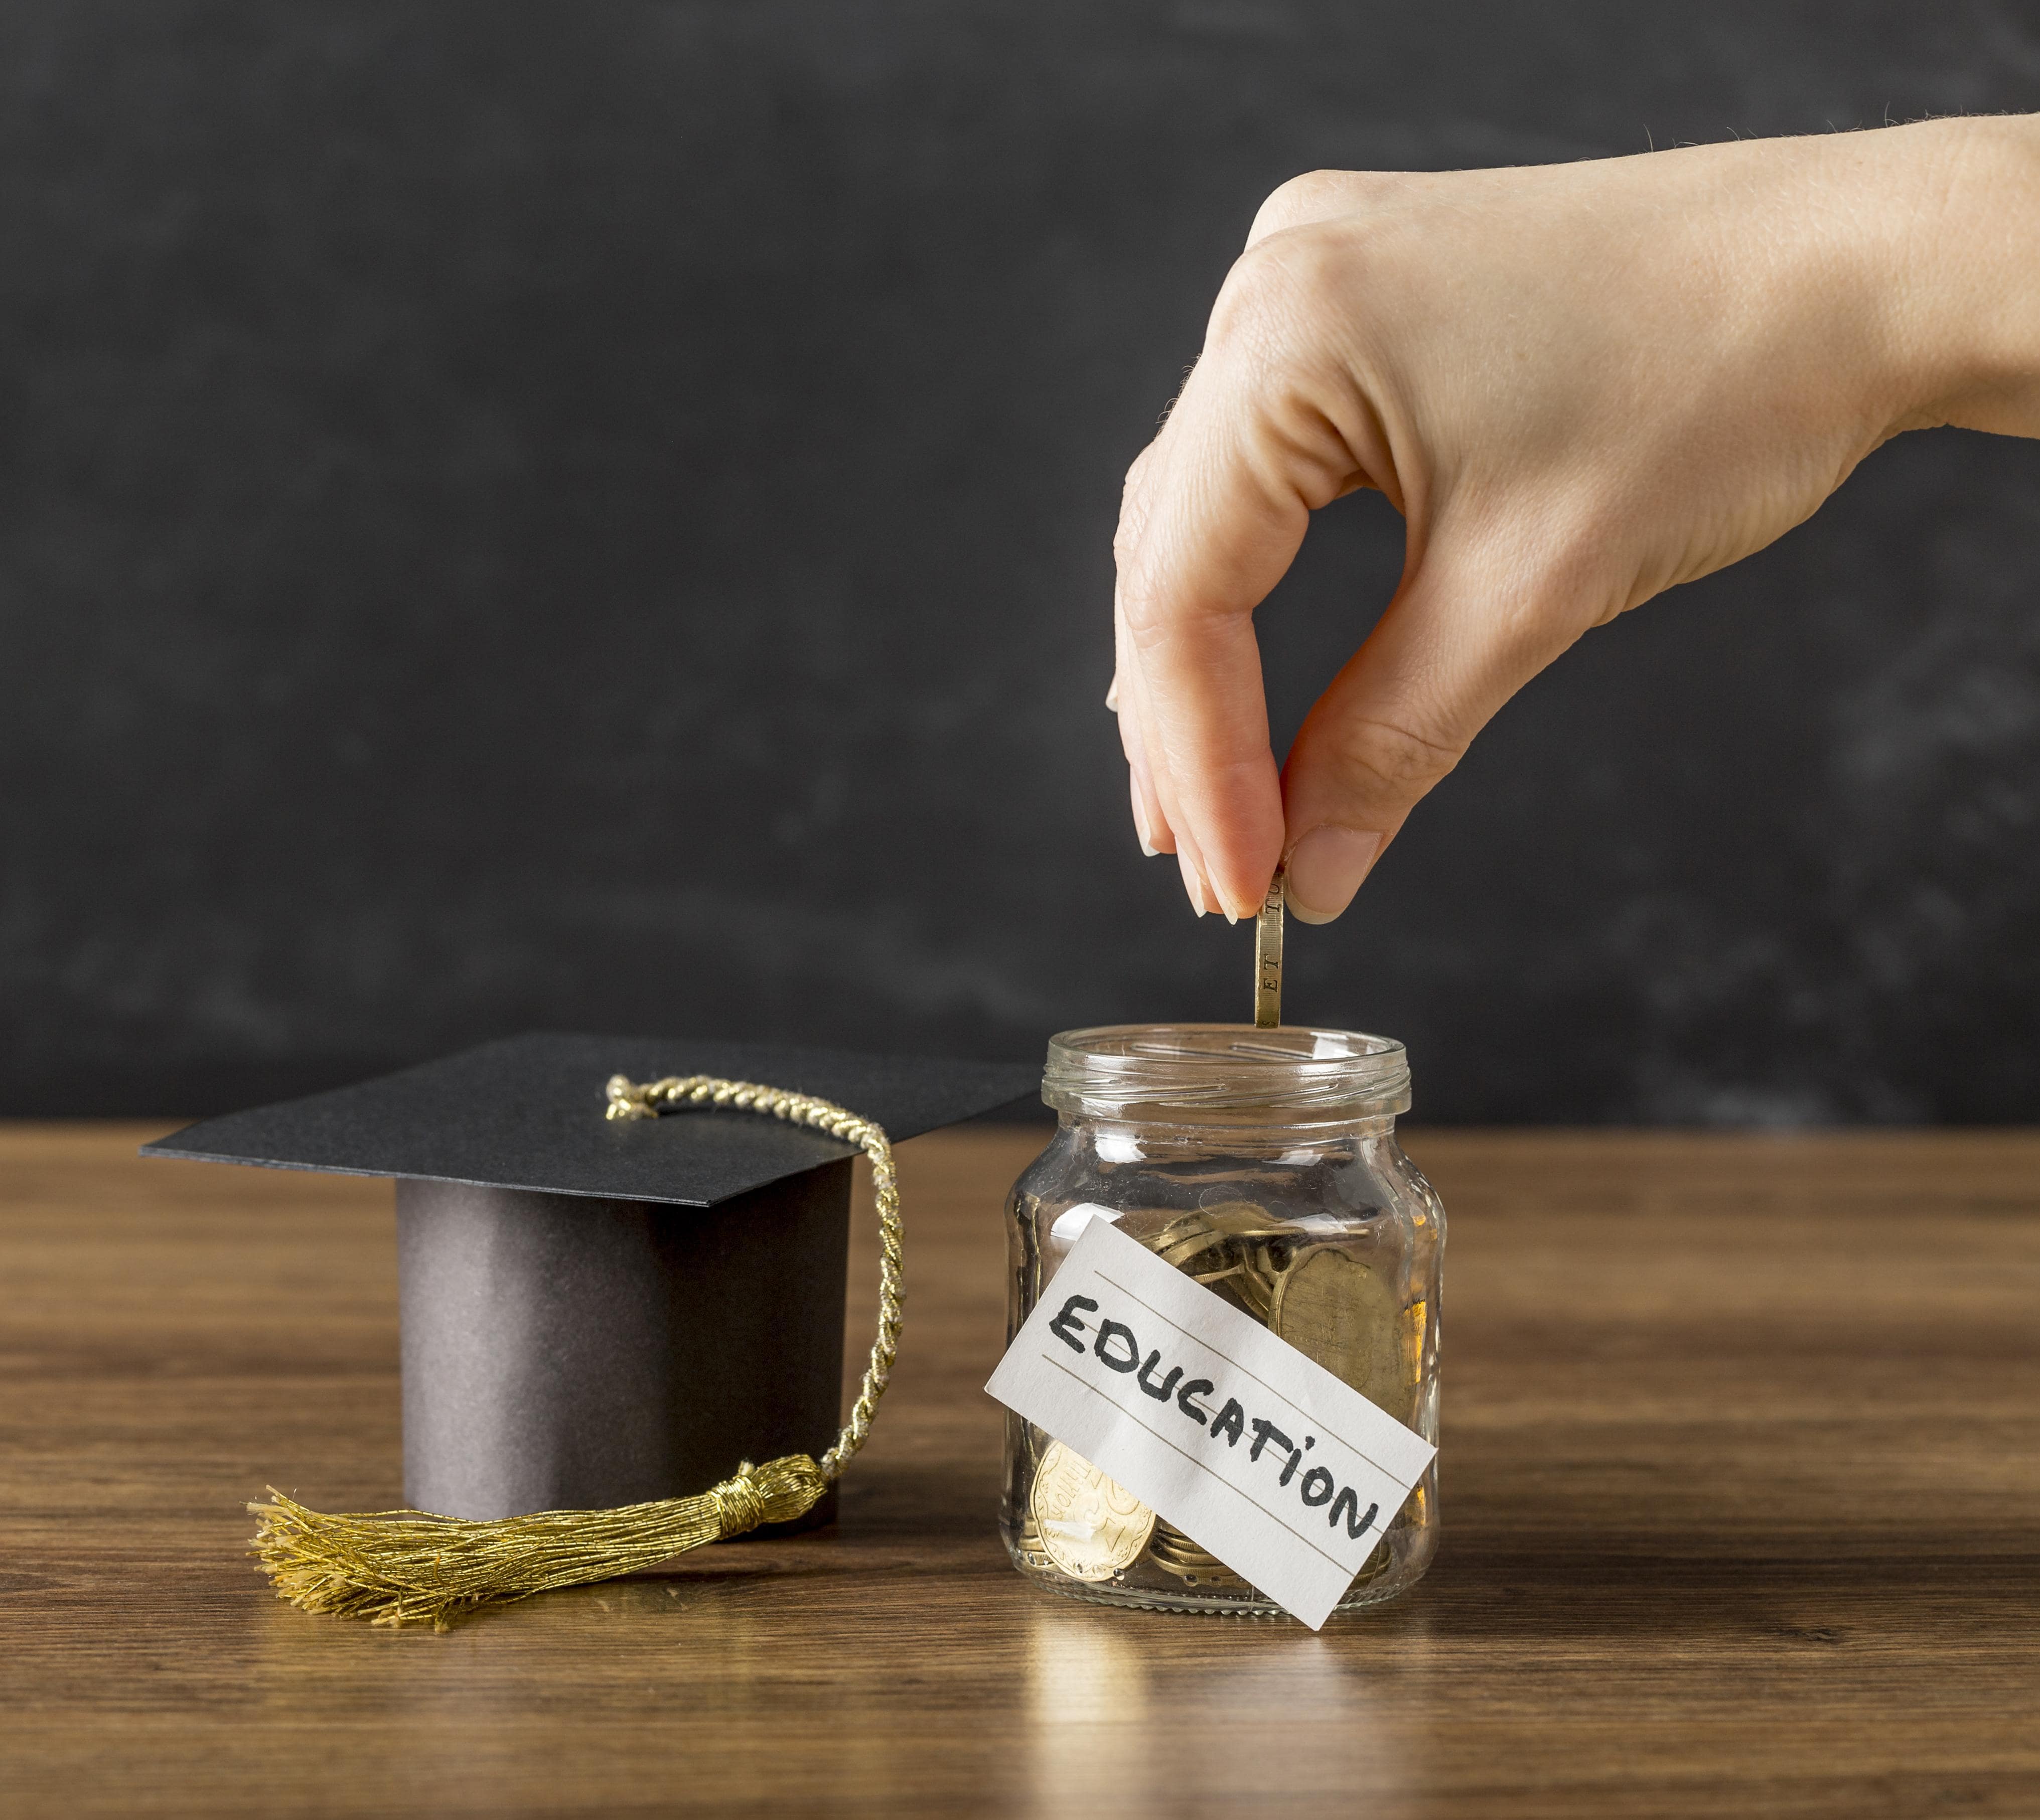 Biaya Pendidikan Makin Mencekik, Student Loan Jadi Solusi?